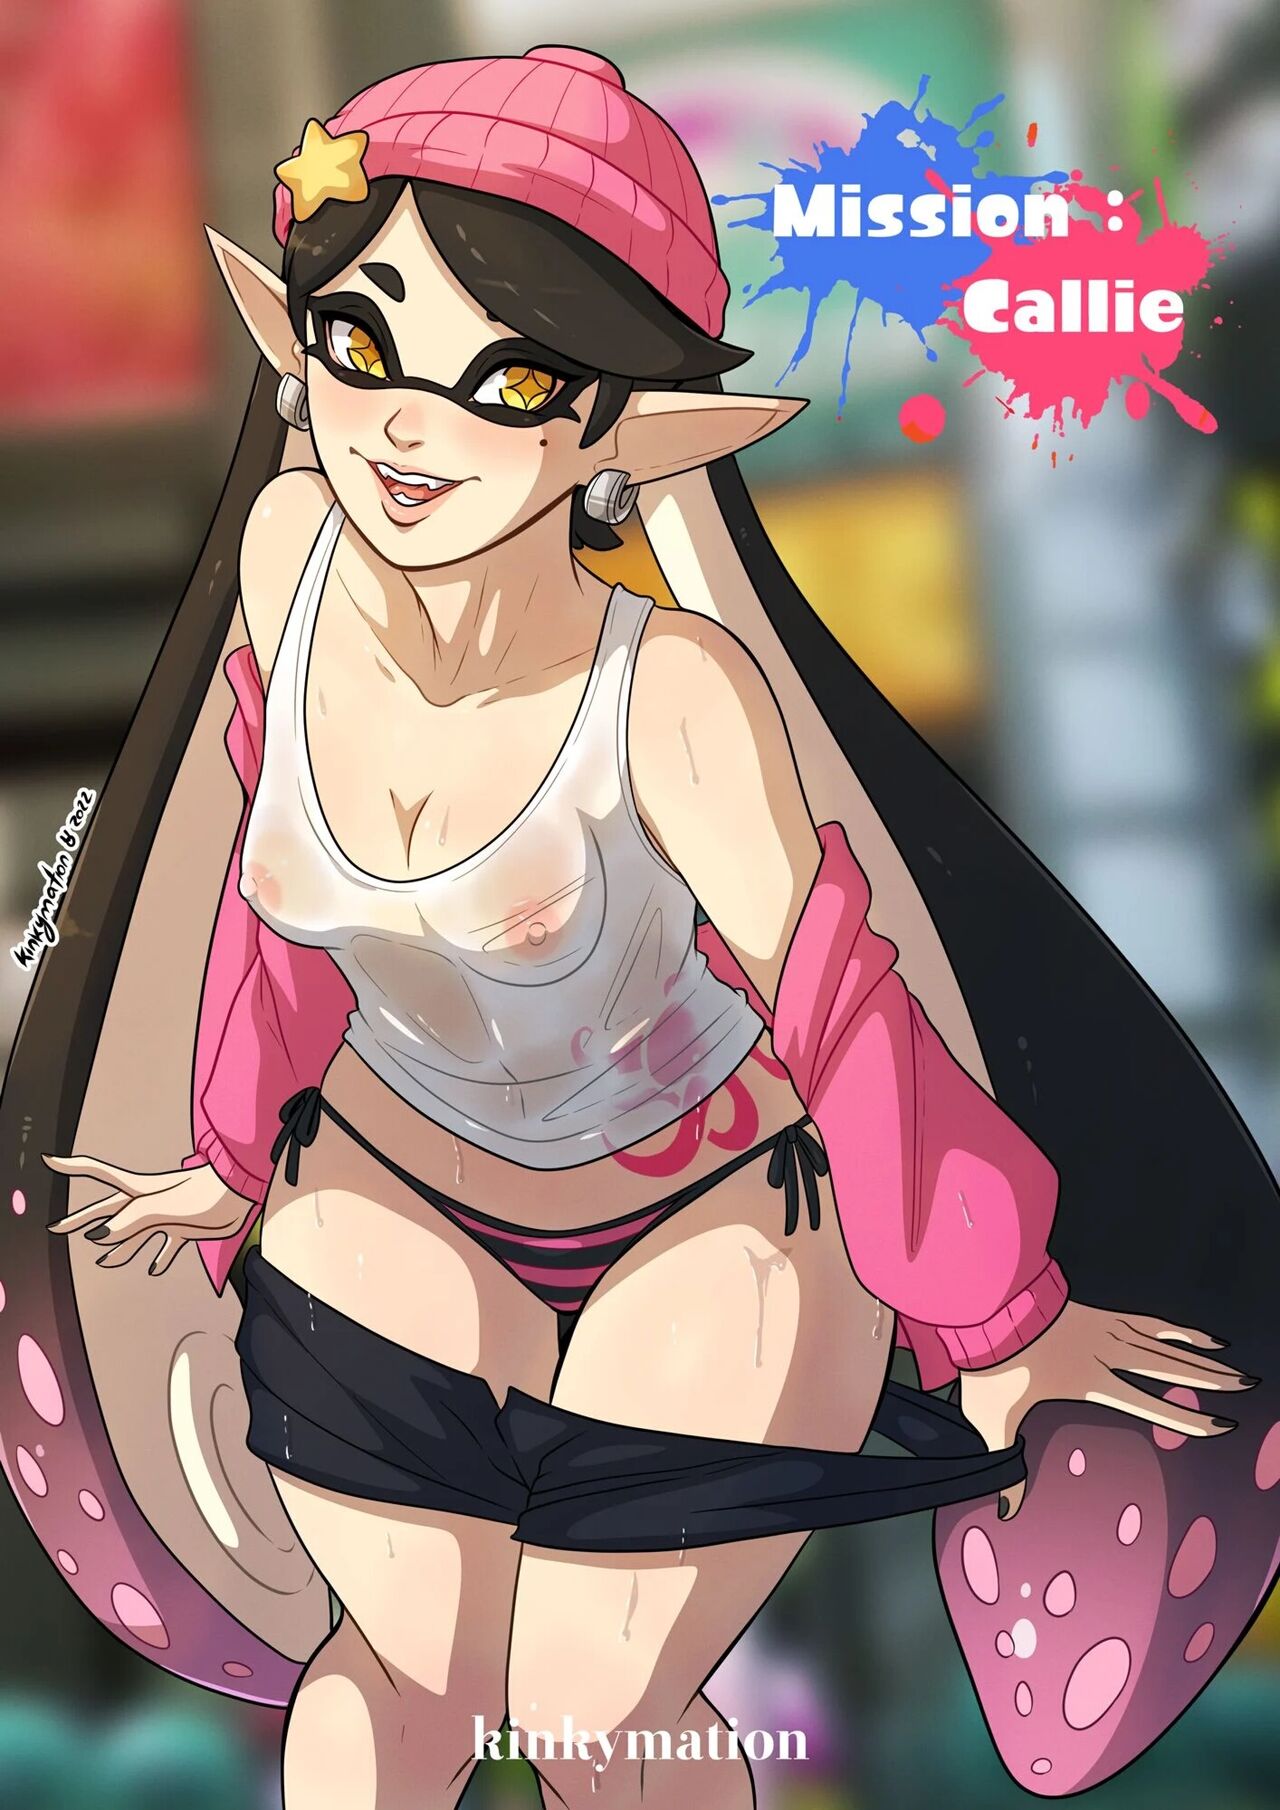 Kinkymation] Mission : Callie (Splatoon) | 18+ Porn Comics